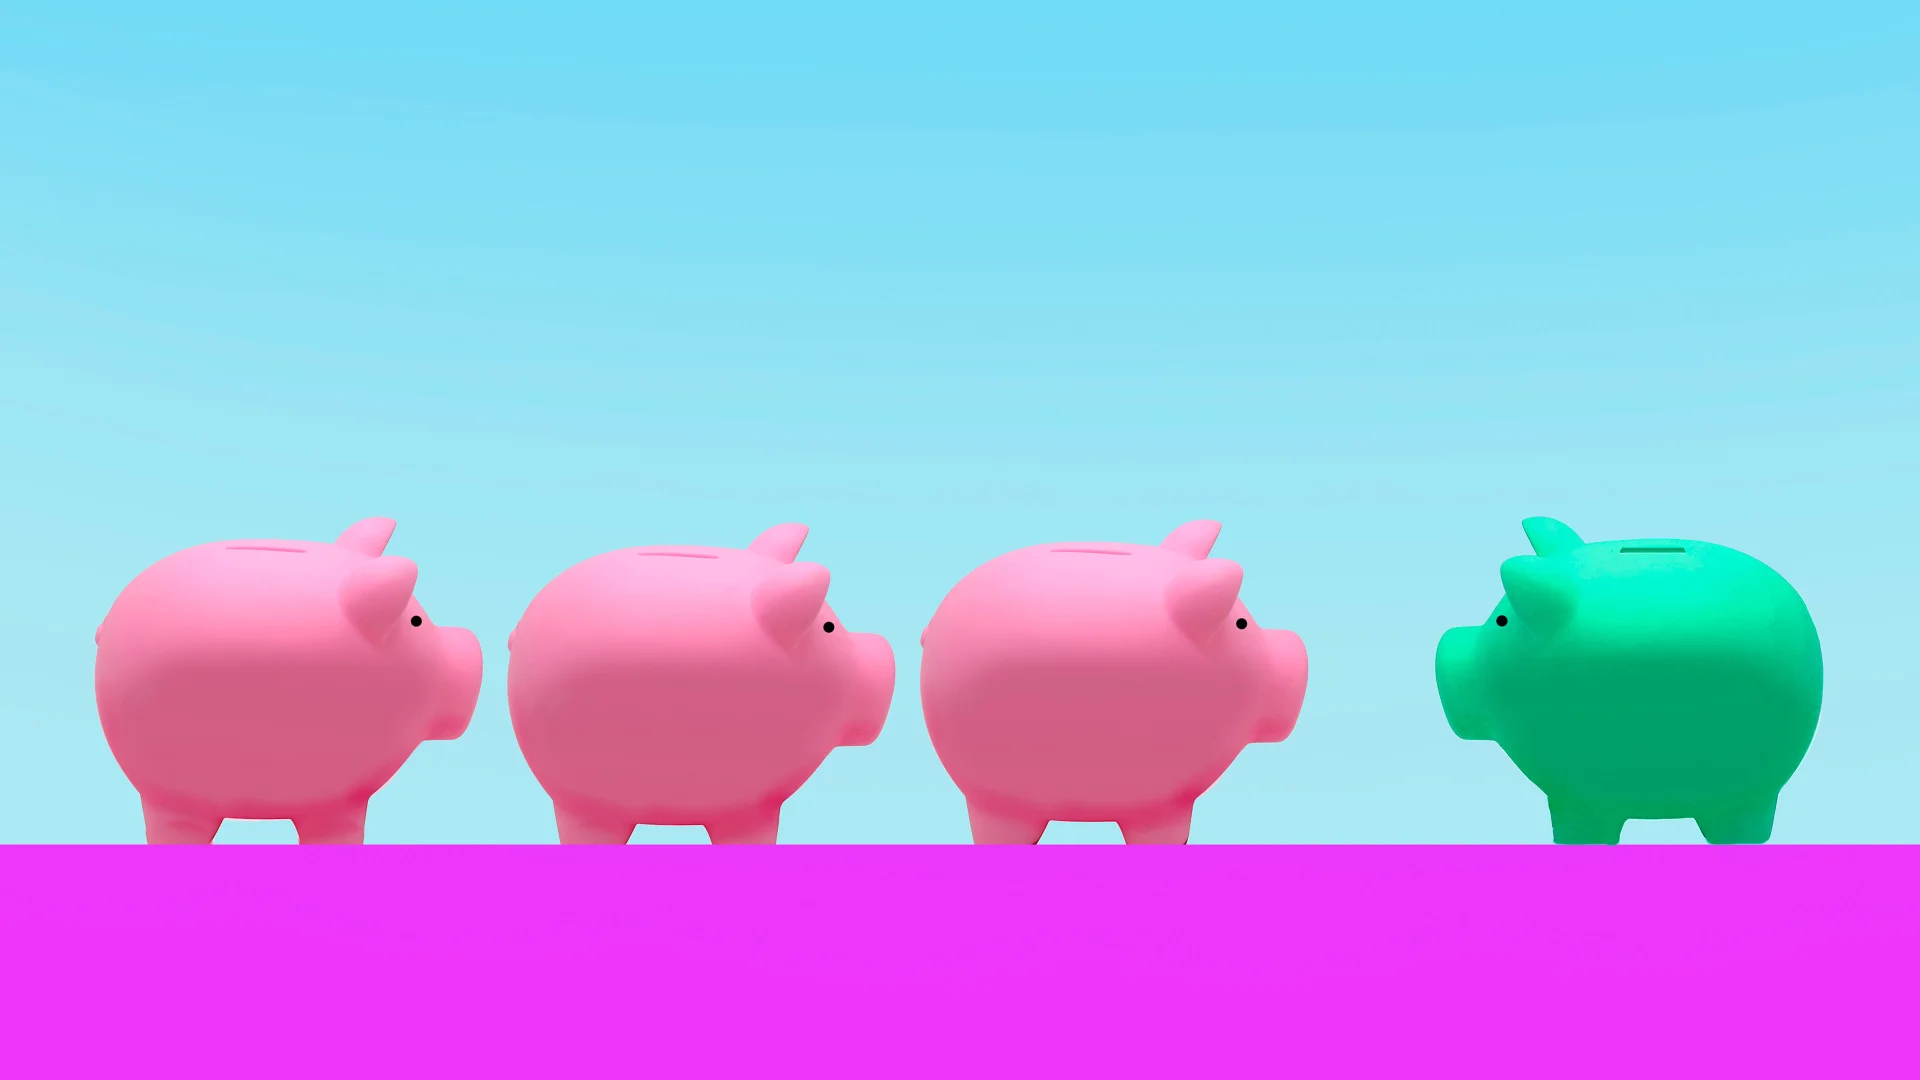 Illustration einer Seitenansicht von vier Sparschweinen, 3 rosafarbene mit Blick in Richtung rechts, ein grünes Sparschwein mit Blick nach links.